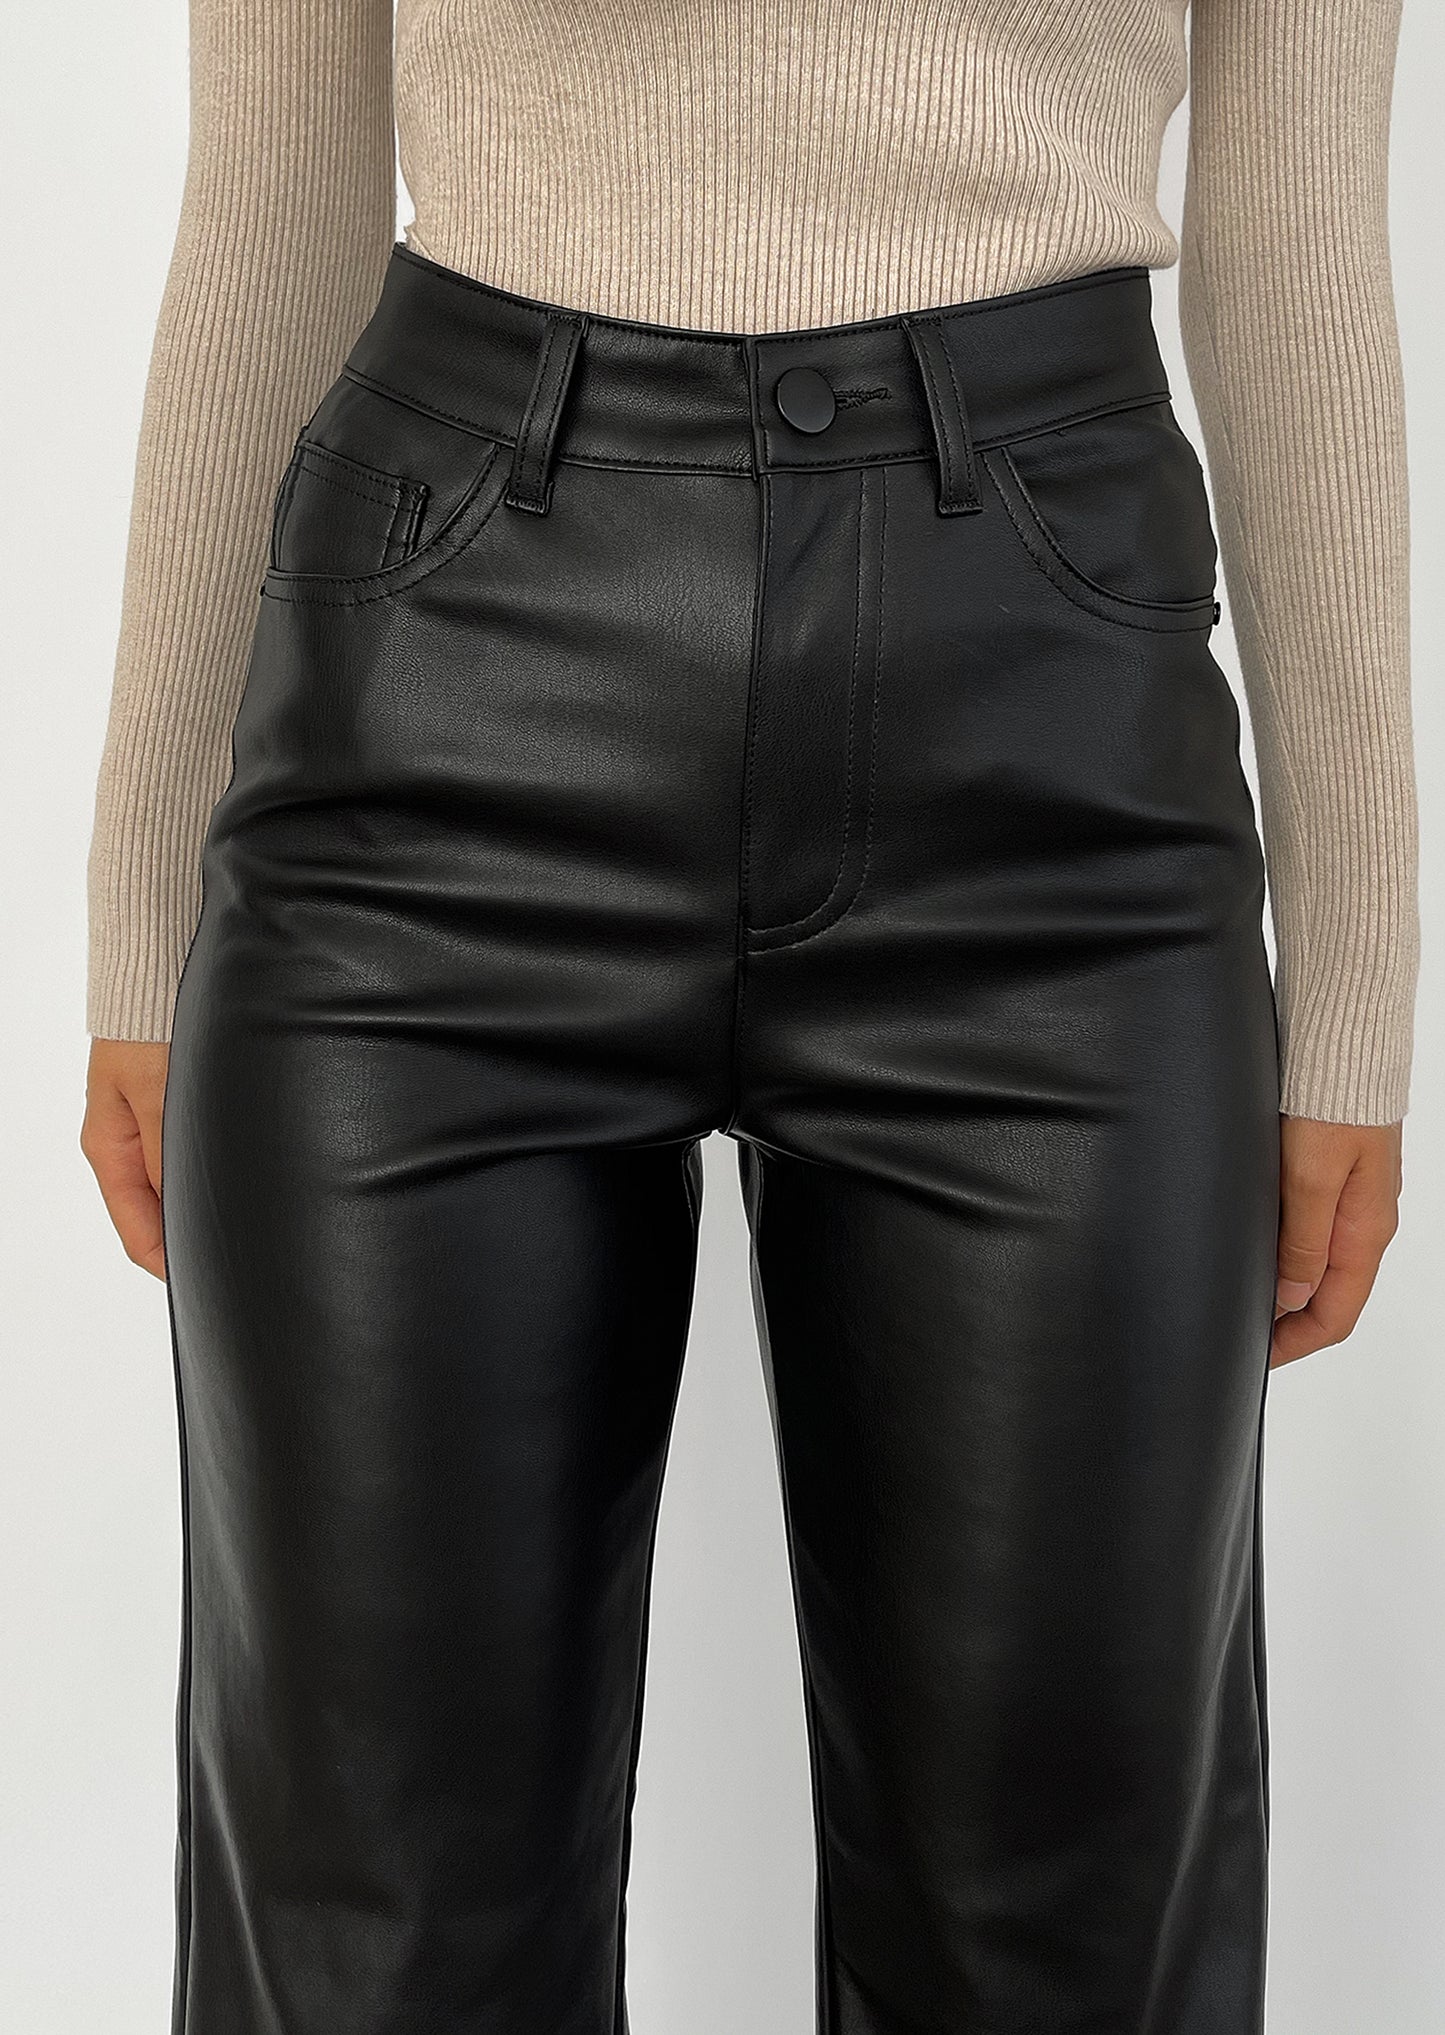 Pantalones de pernera ancha de cuero sintético negro